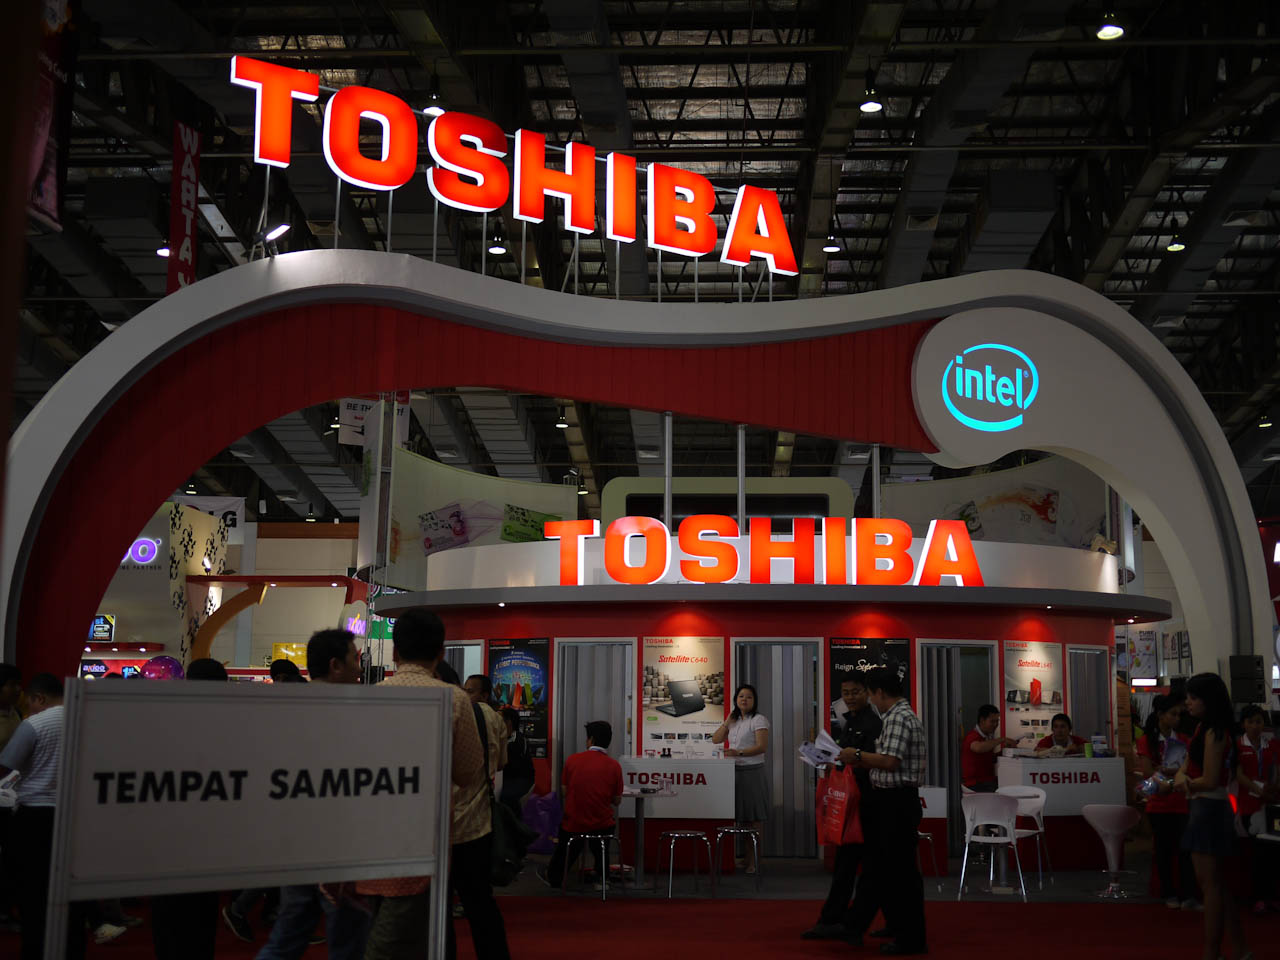 Stand de Toshiba en una feria tecnológica.